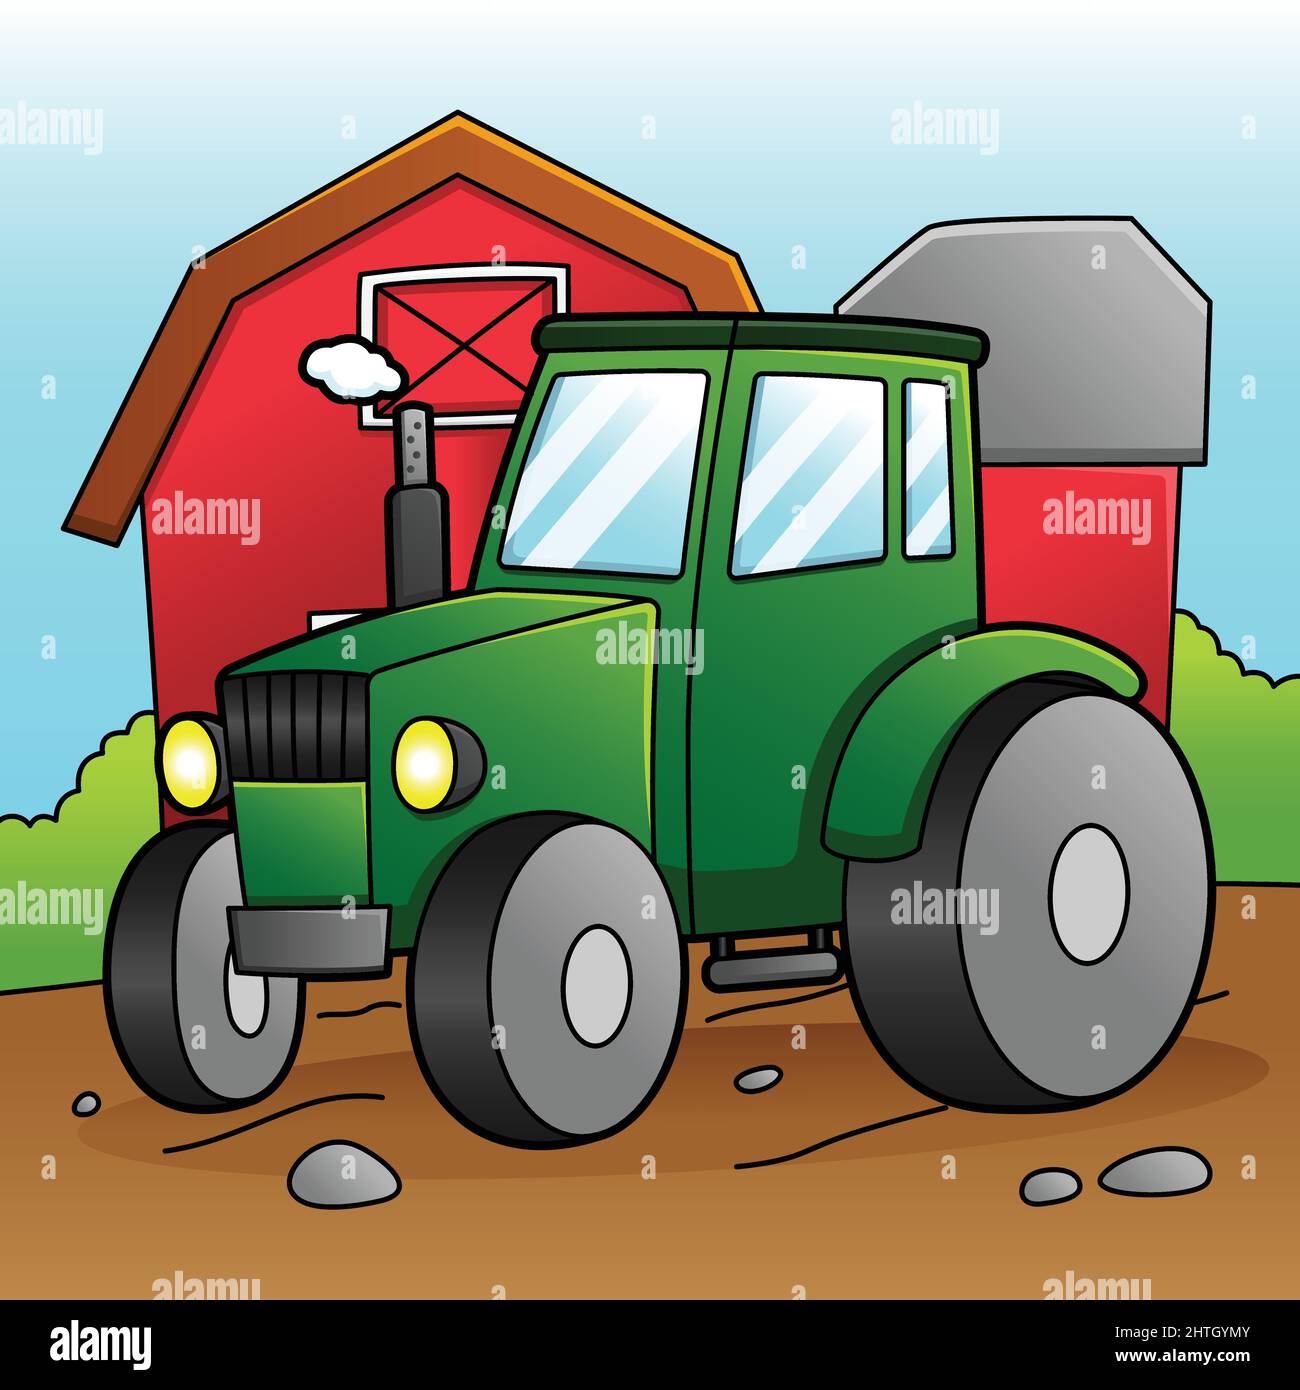 Kaufe Cartoon Traktor Engineering Fahrzeug Wandaufkleber